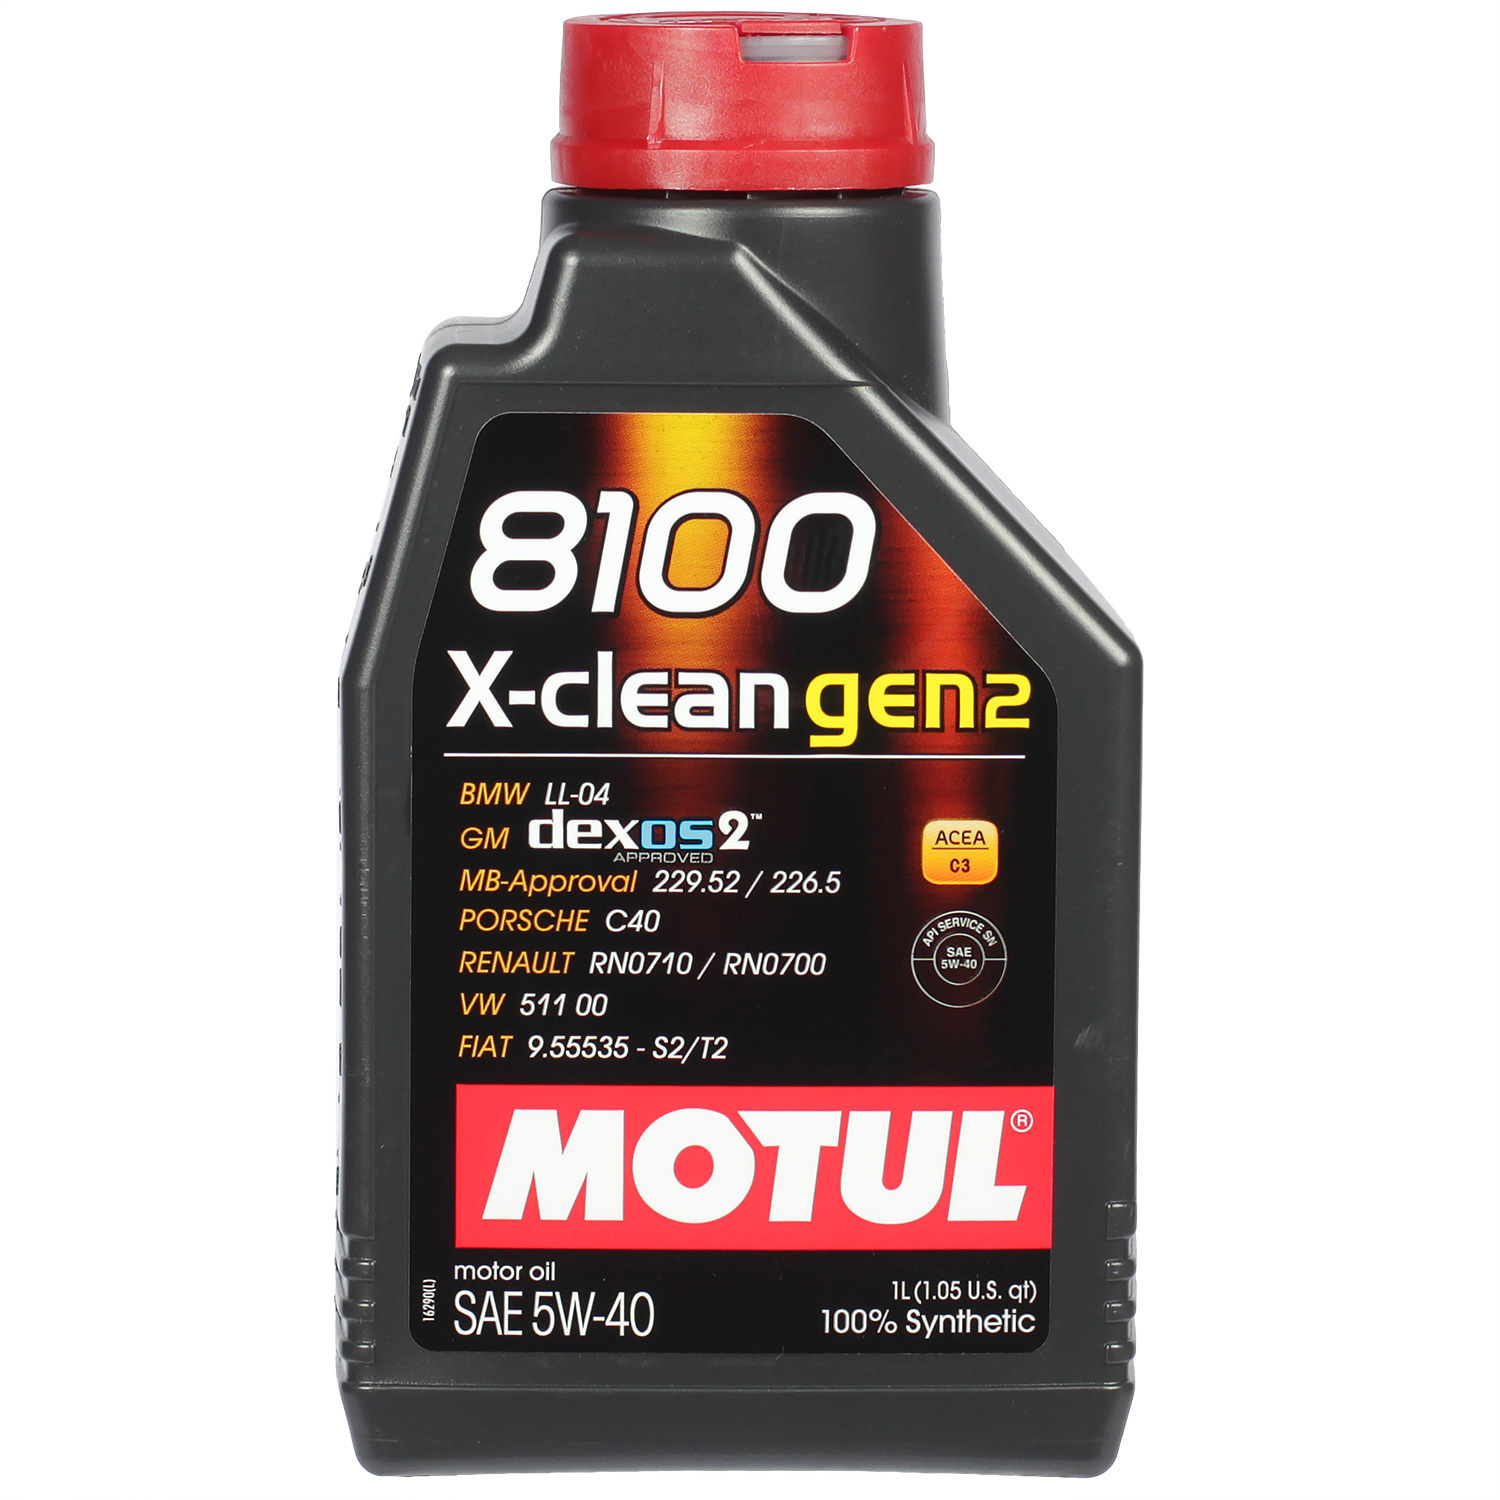 motul моторное масло motul 8100 x cess gen2 5w 40 4 л Motul Моторное масло Motul 8100 X-clean gen2 5W-40, 1 л